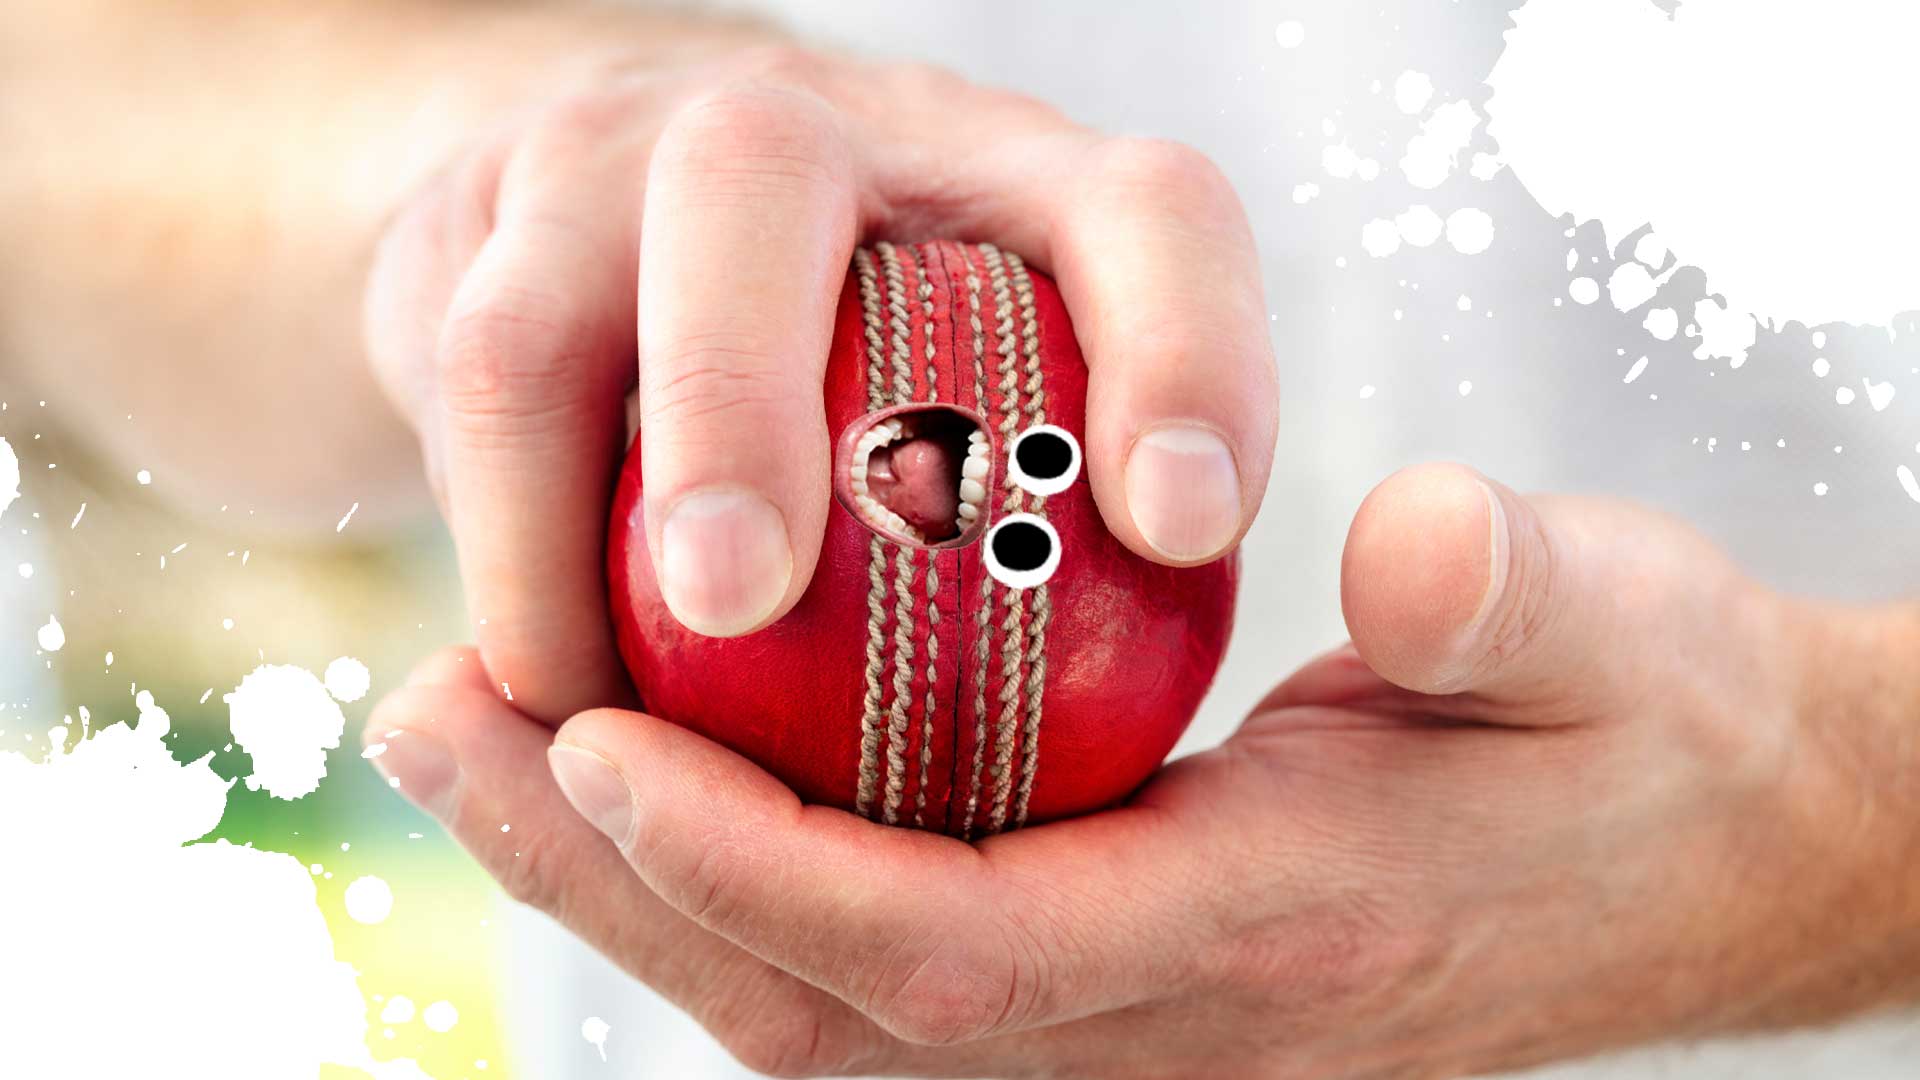 A bowler holding a cricket ball